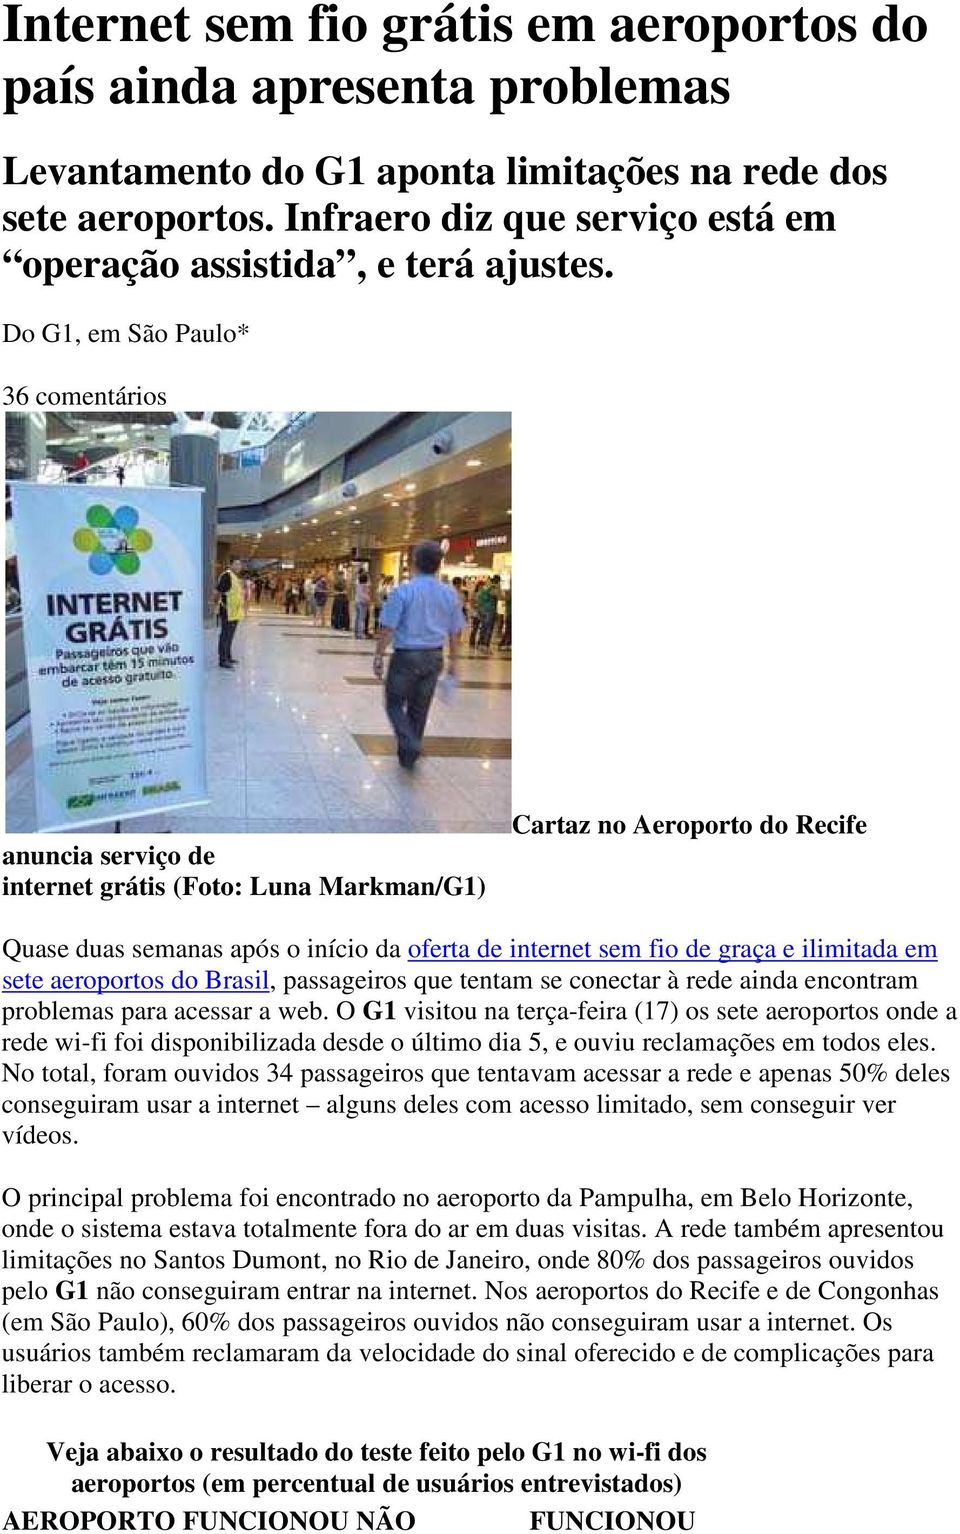 Do G1, em São Paulo* 36 comentários anuncia serviço de internet grátis (Foto: Luna Markman/G1) Cartaz no Aeroporto do Recife Quase duas semanas após o início da oferta de internet sem fio de graça e